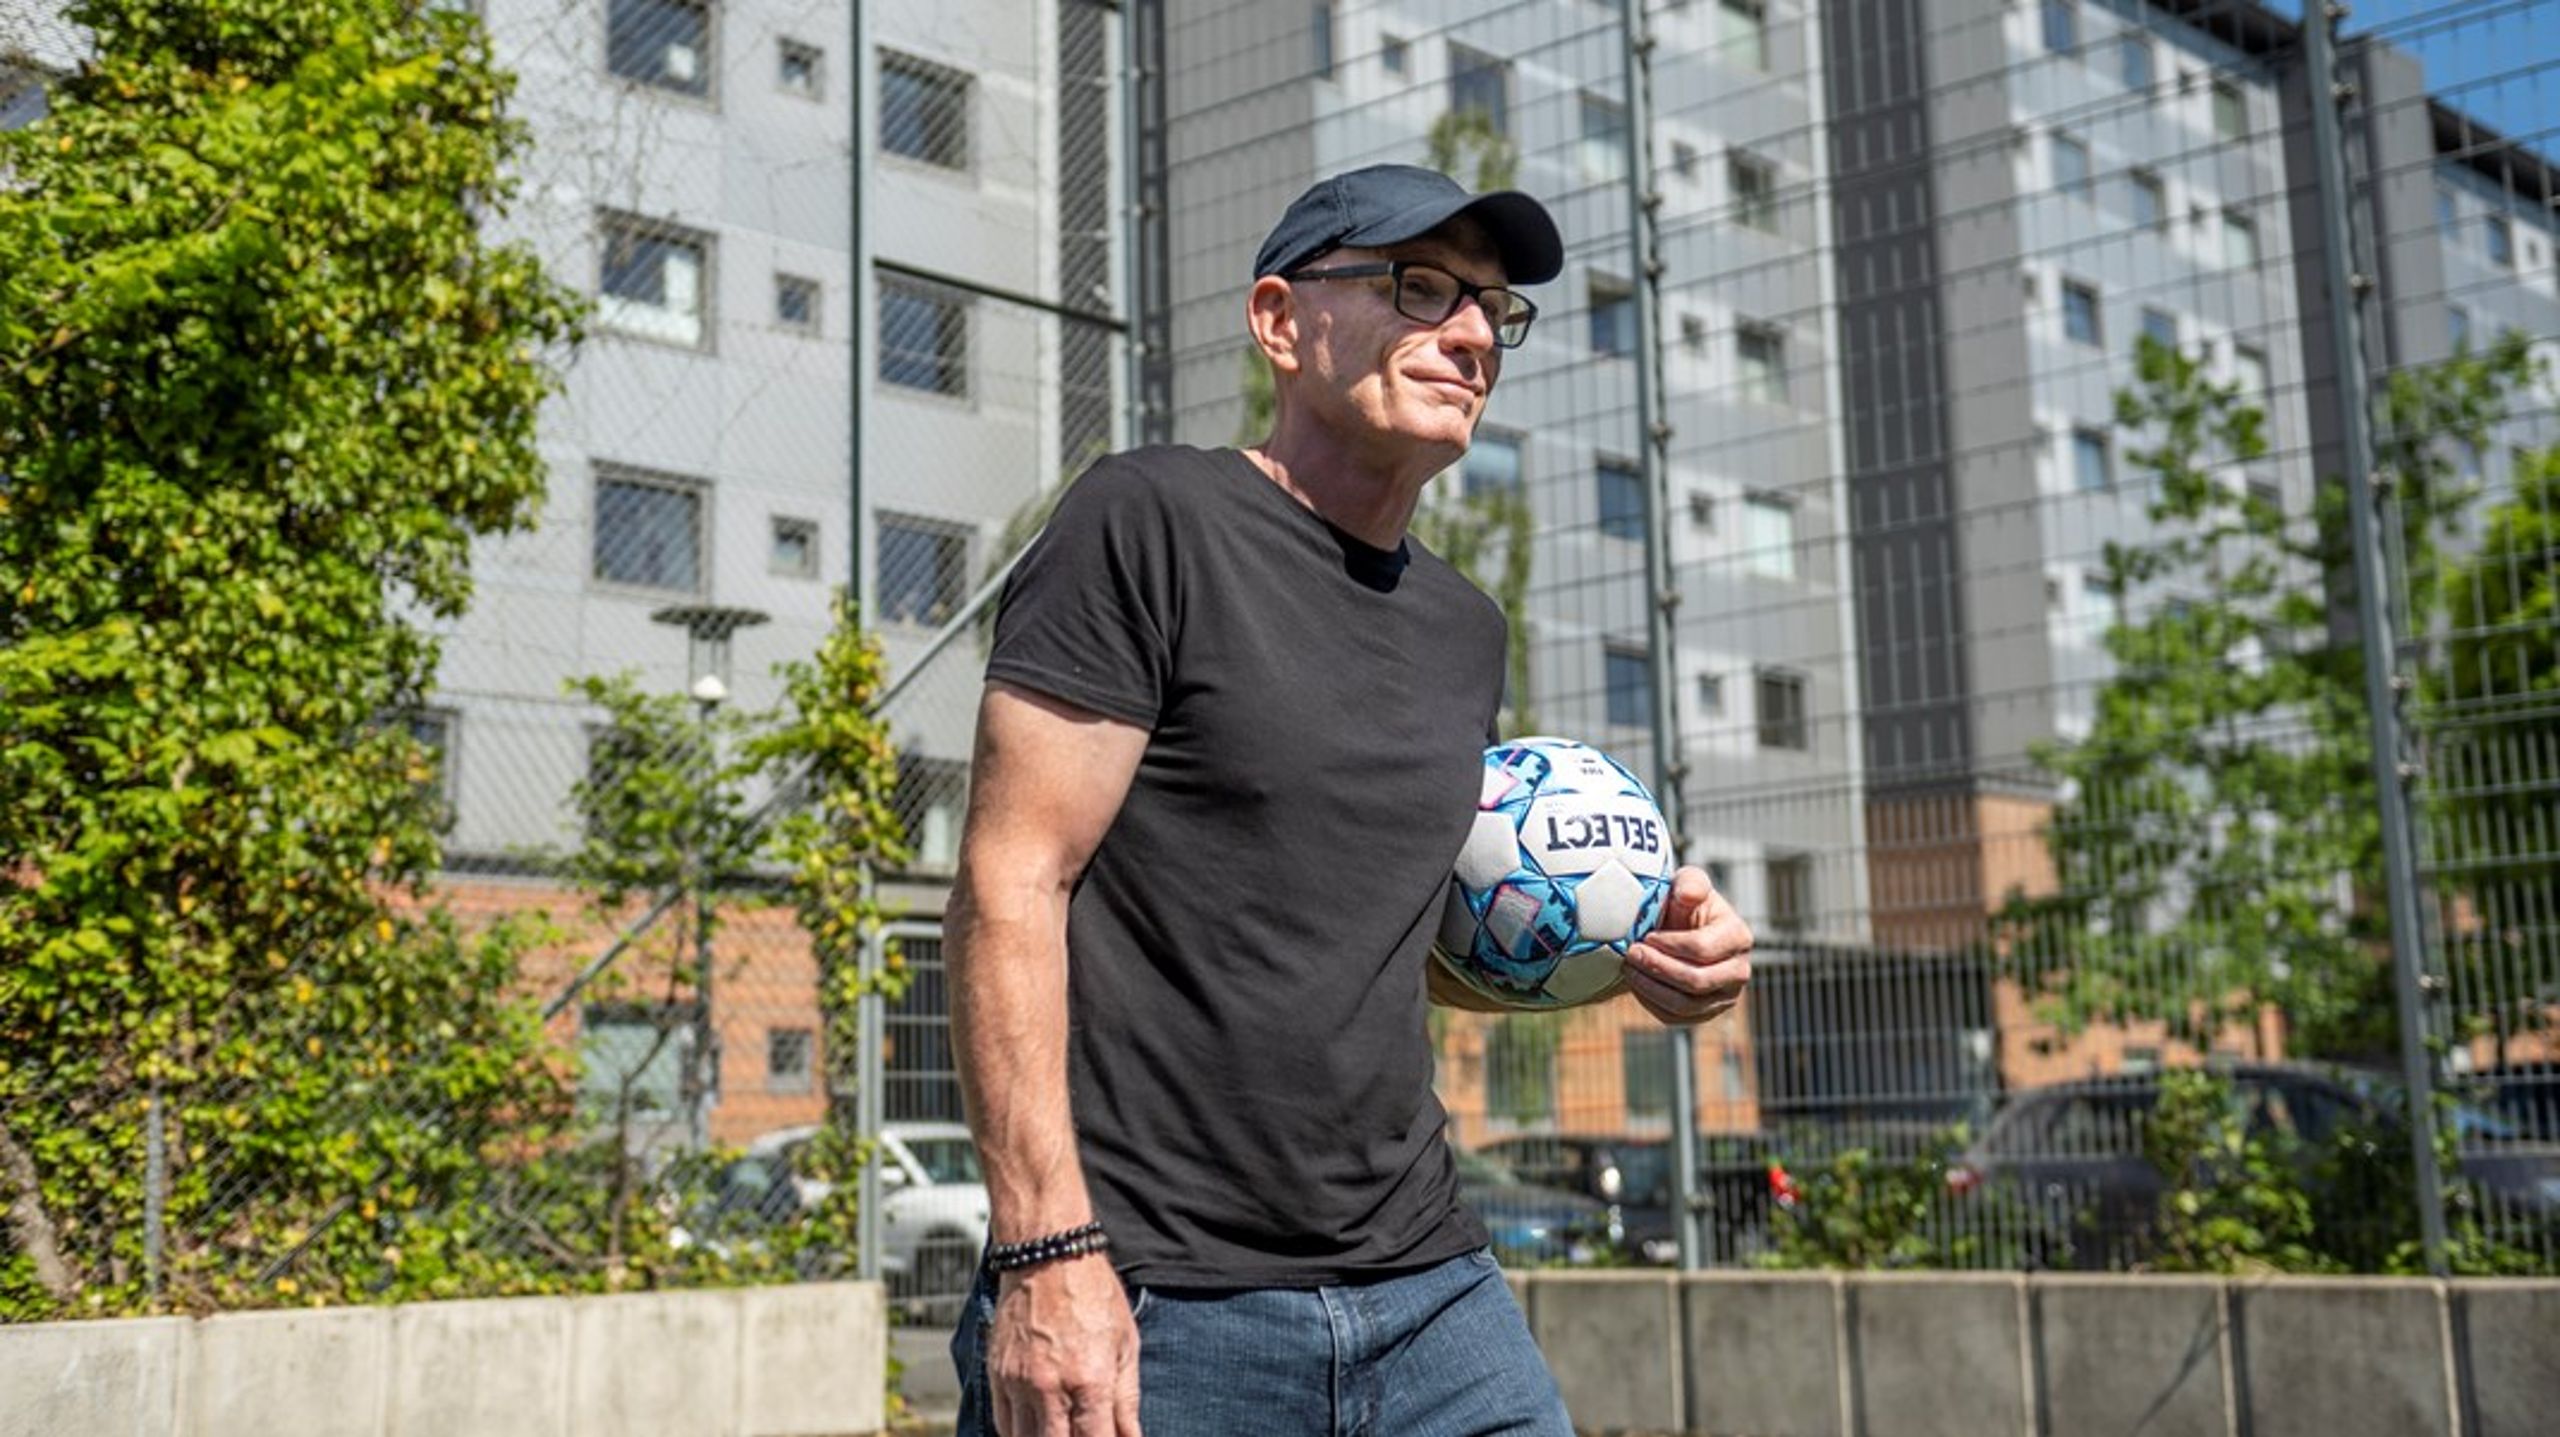 De større børn på gaden lærte Søren Østergaard at lege og spille fodbold. Men den slags analoge fællesskaber er forsvundet, og derfor skal idrætten og trænere påtage sig opgaven som legemestre for børn unge, mener han.